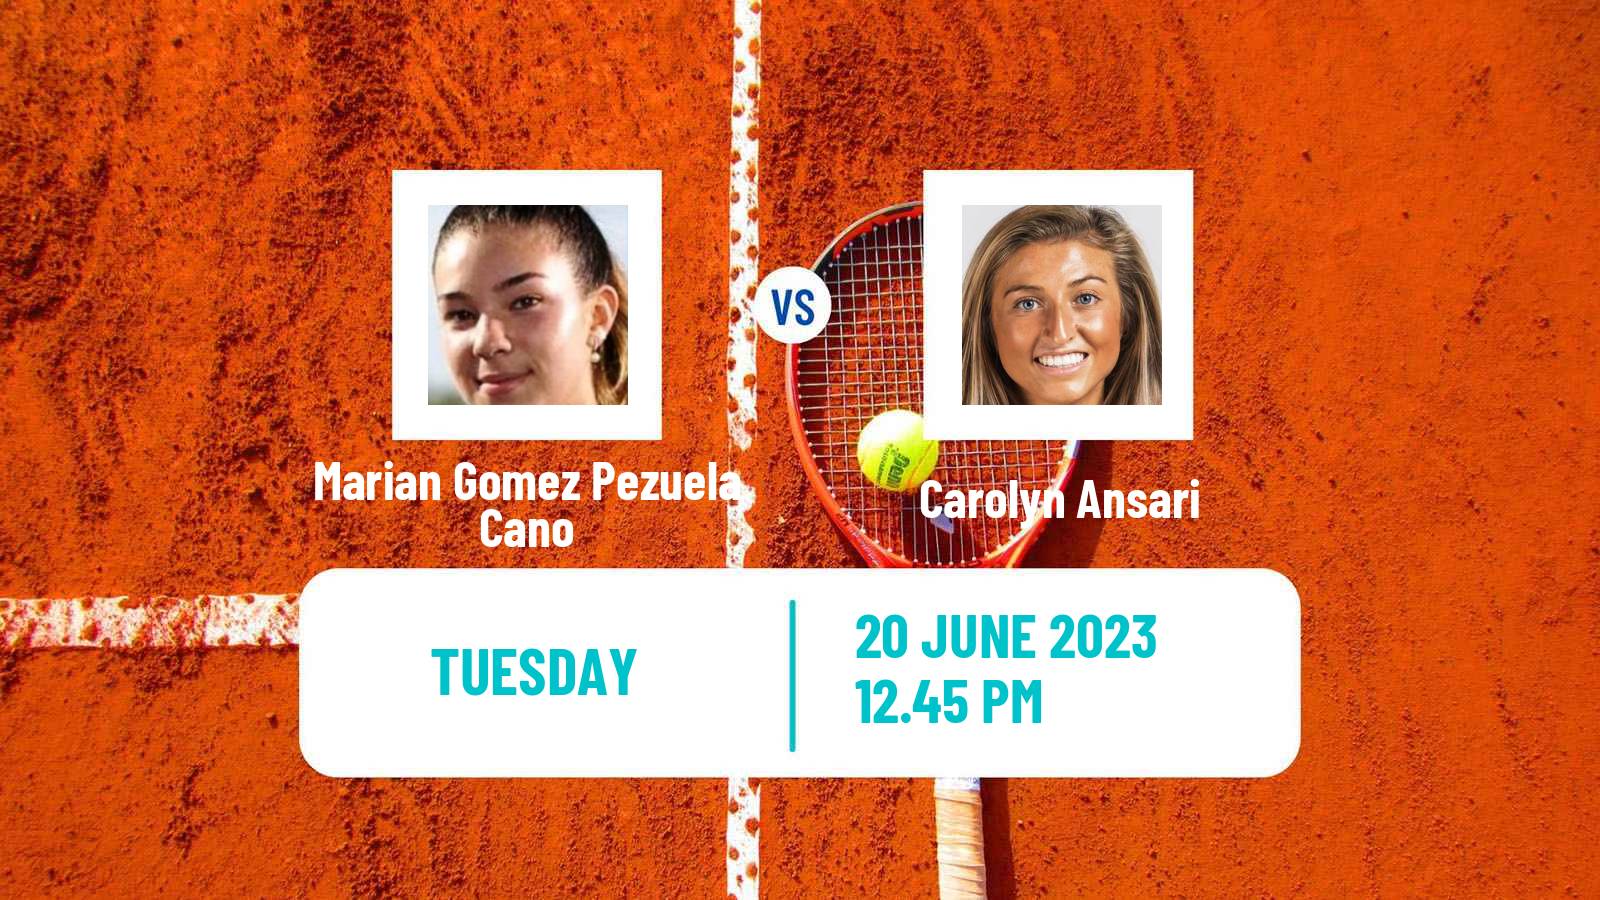 Tennis ITF W25 Santo Domingo 3 Women Marian Gomez Pezuela Cano - Carolyn Ansari